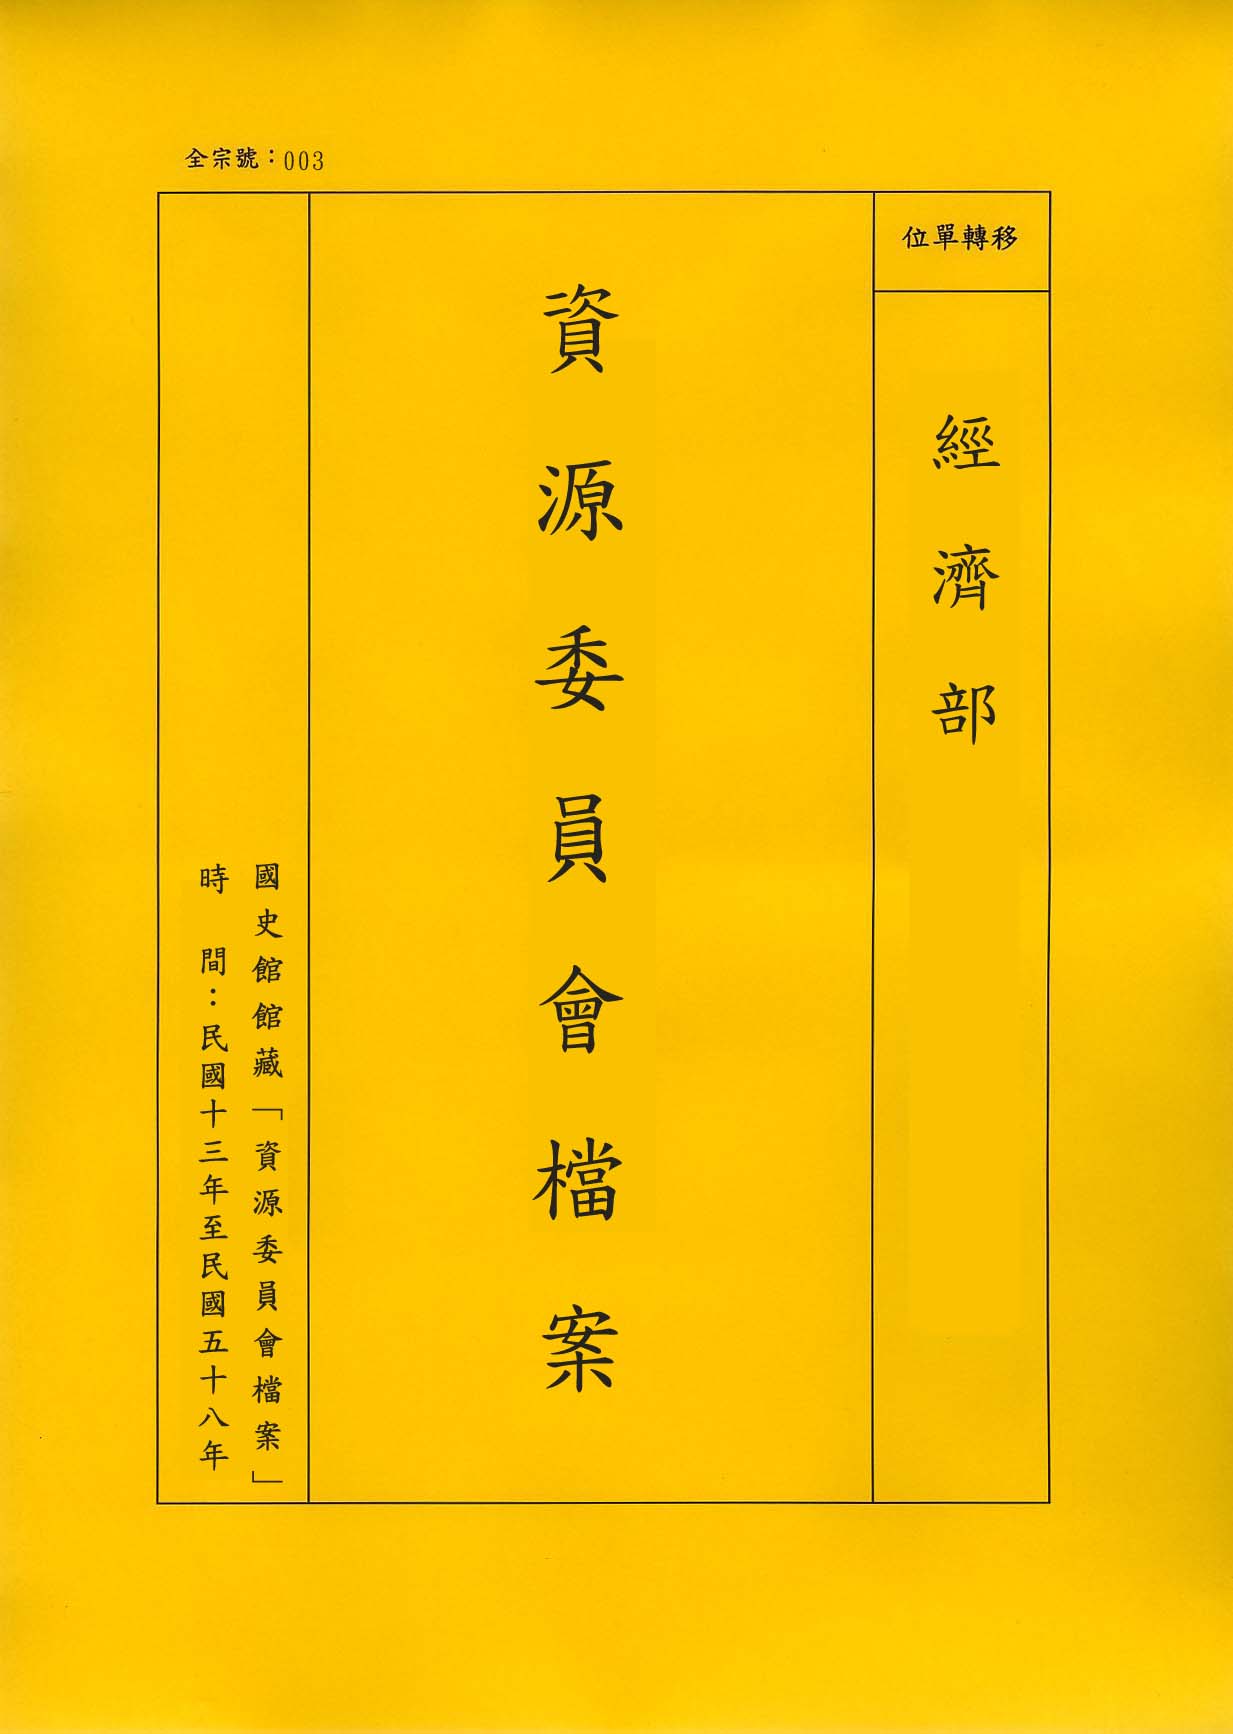 卷名:織襪工廠調查表─上海(二)(003-010306-0195)